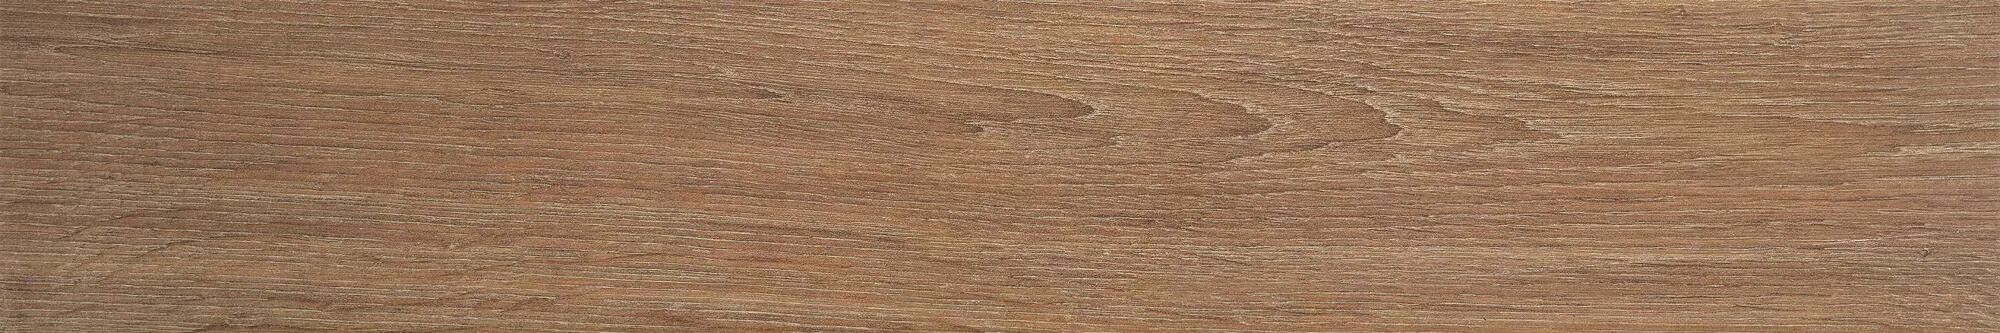 Suelo porcelánico articwood efecto madera marrón 15x90 cm c1